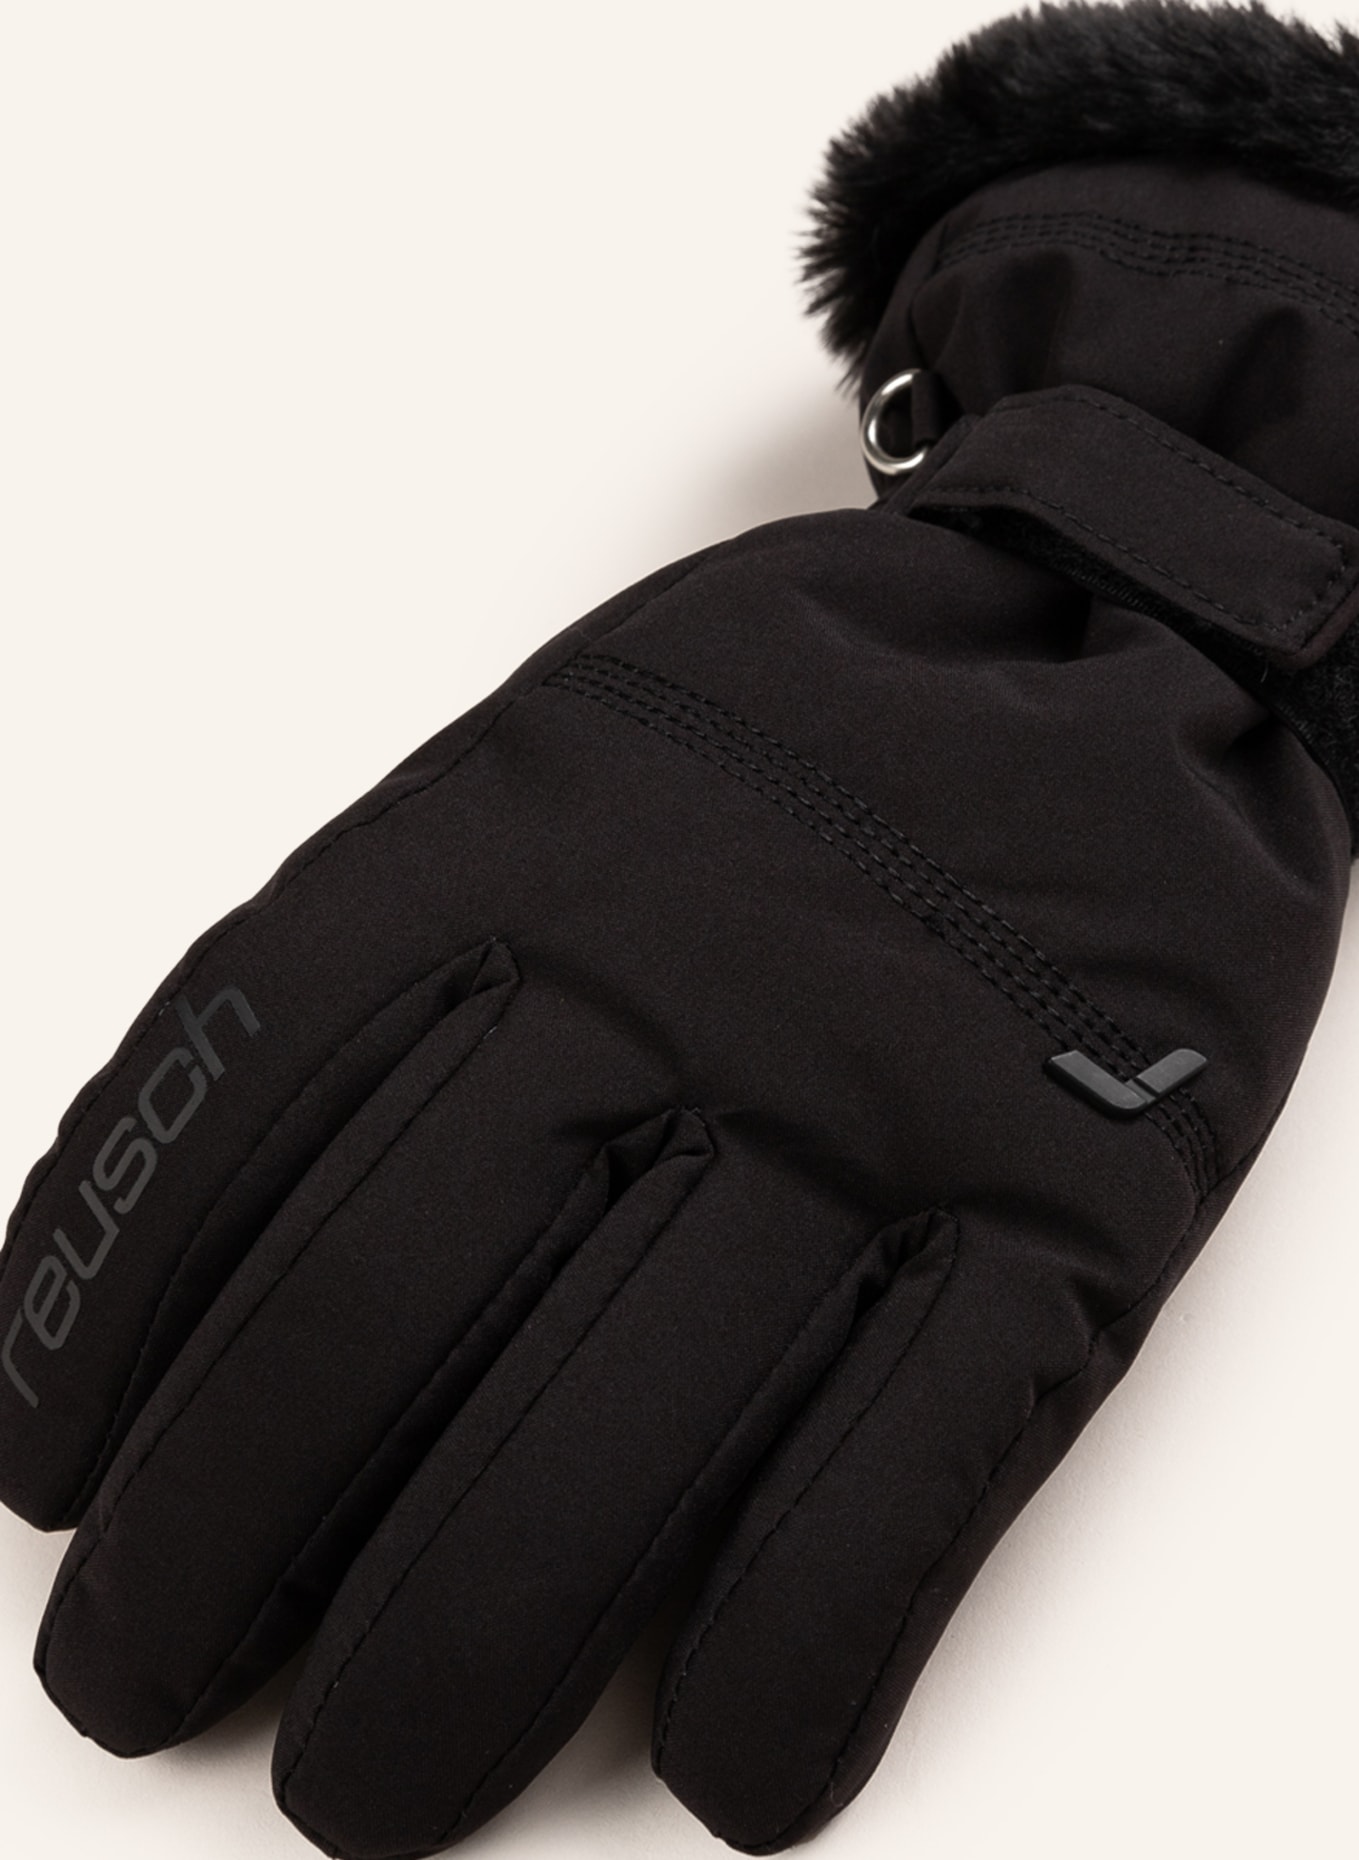 reusch Ski gloves black XT R-TEX LUNA in